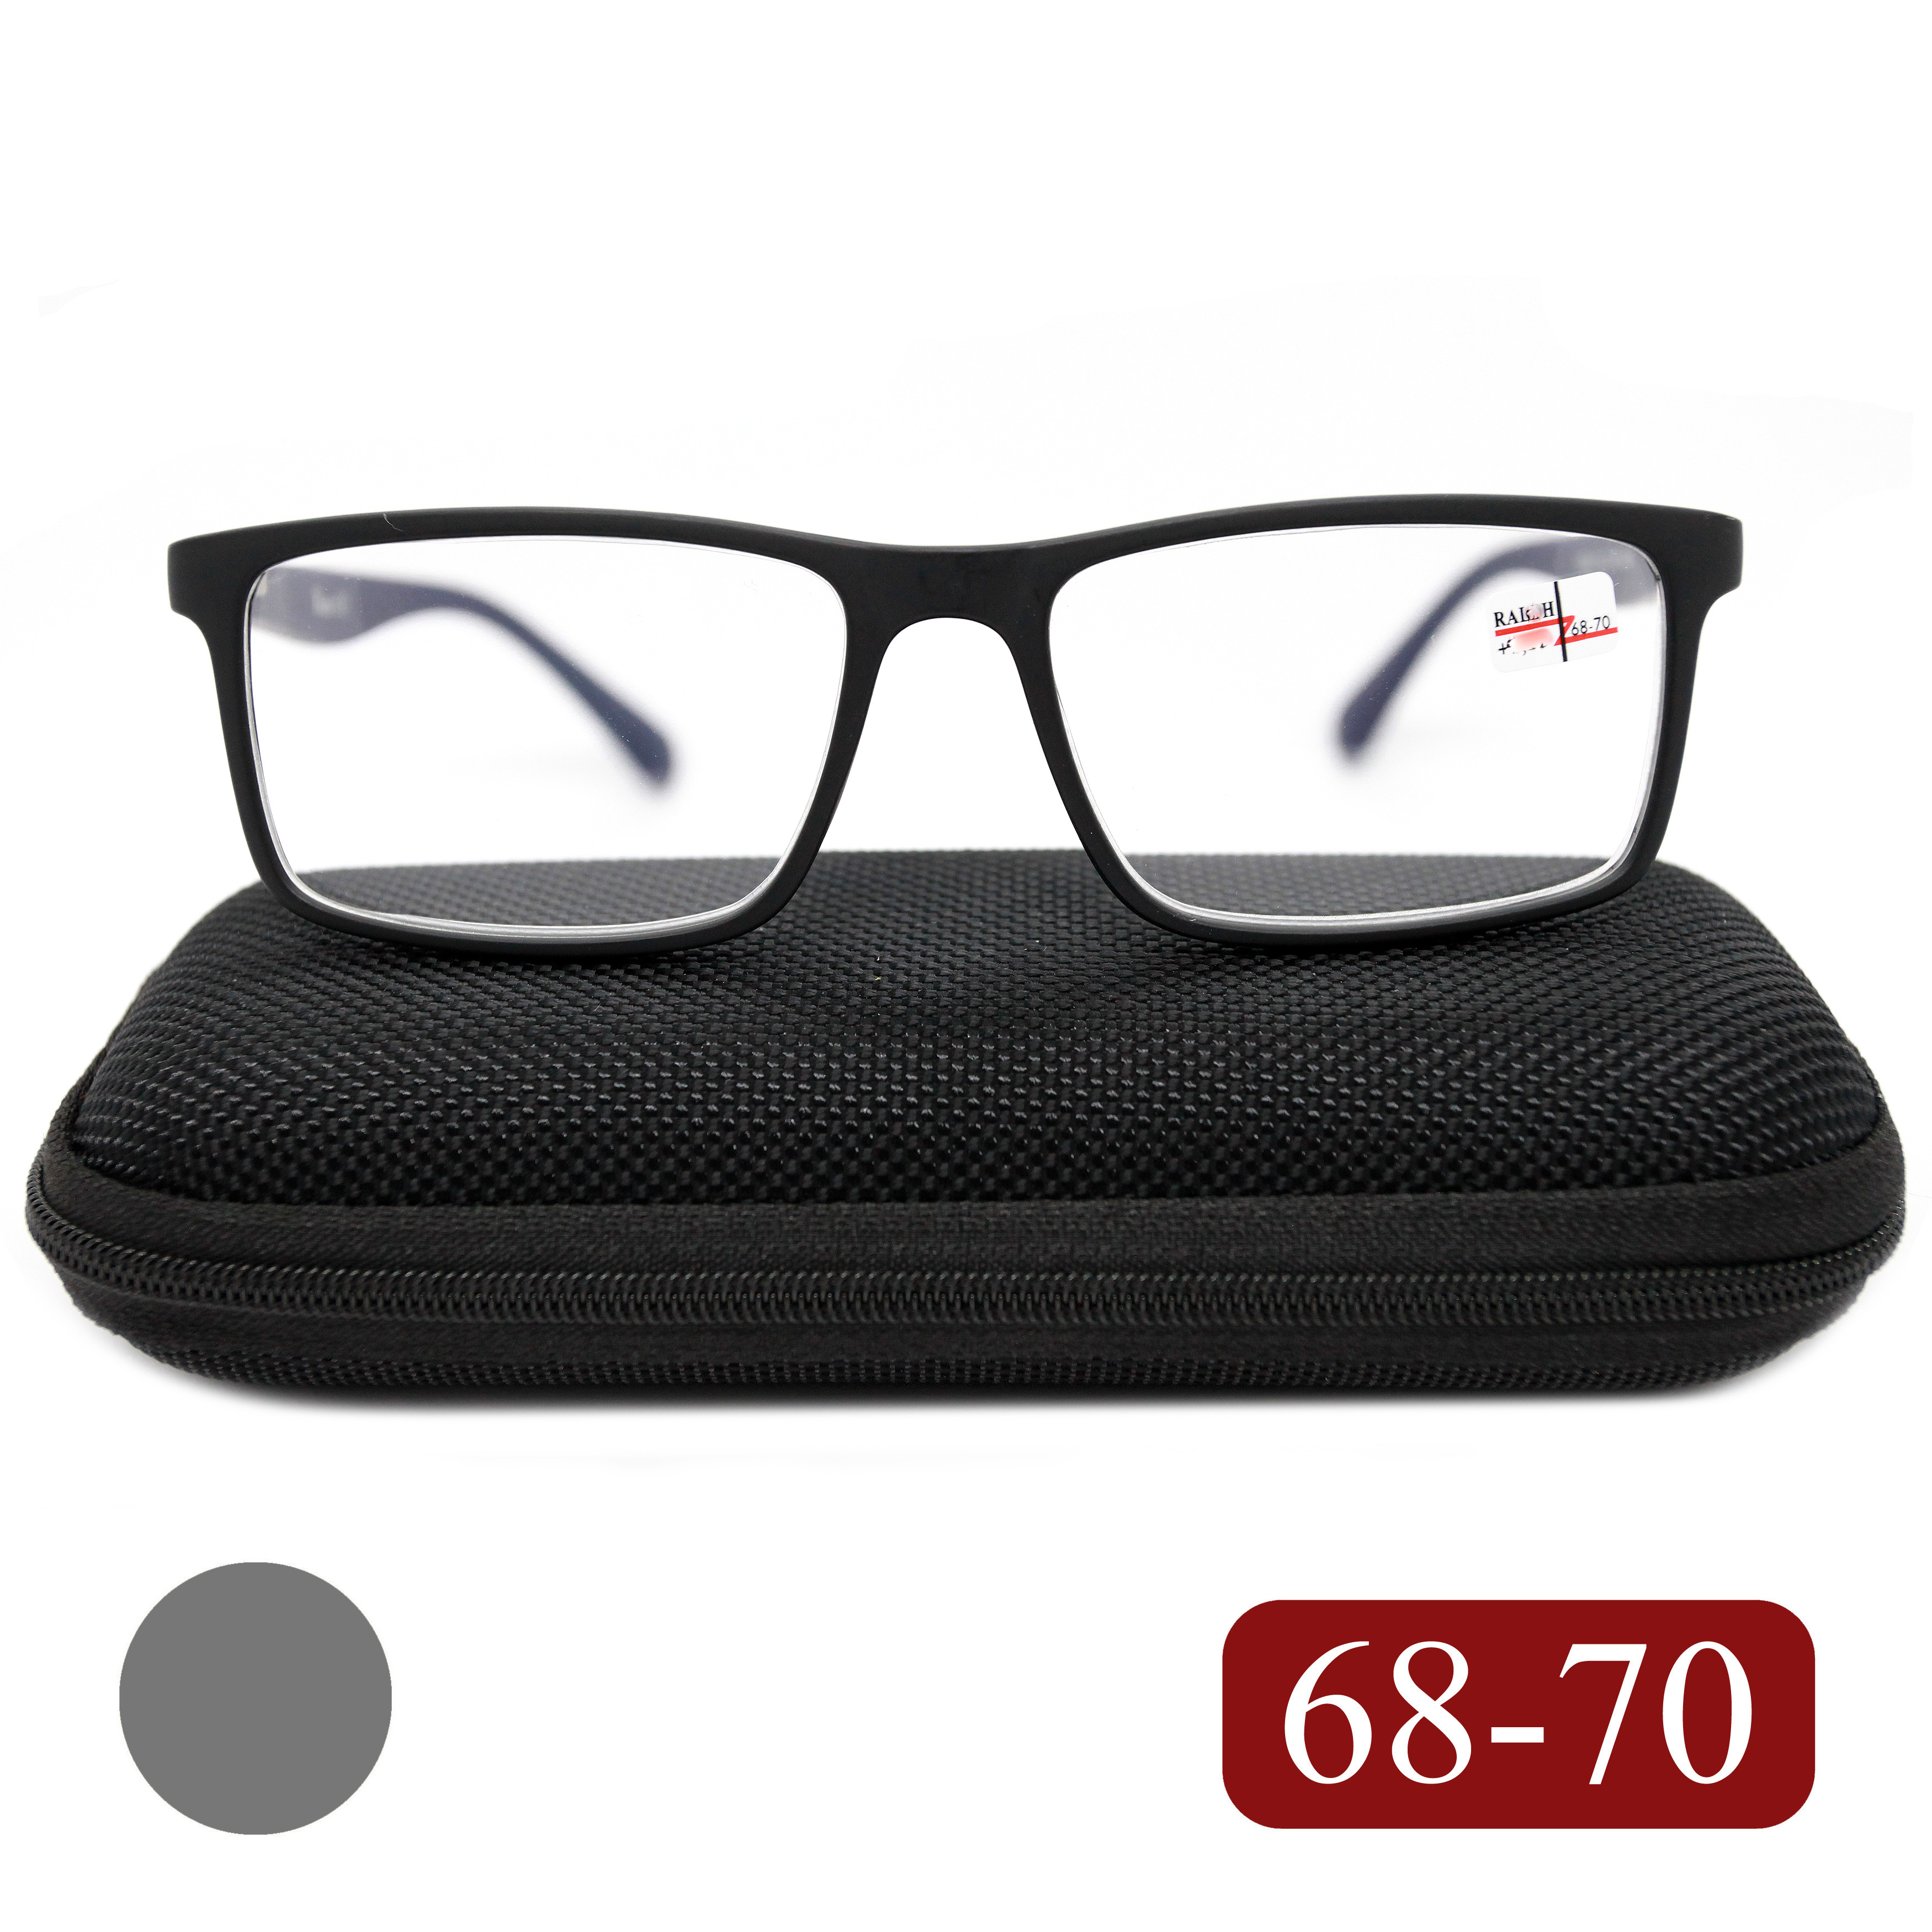 Готовые очки RALPH 0682 +0,50, для чтения, c футляром, черно-серый, РЦ 68-70